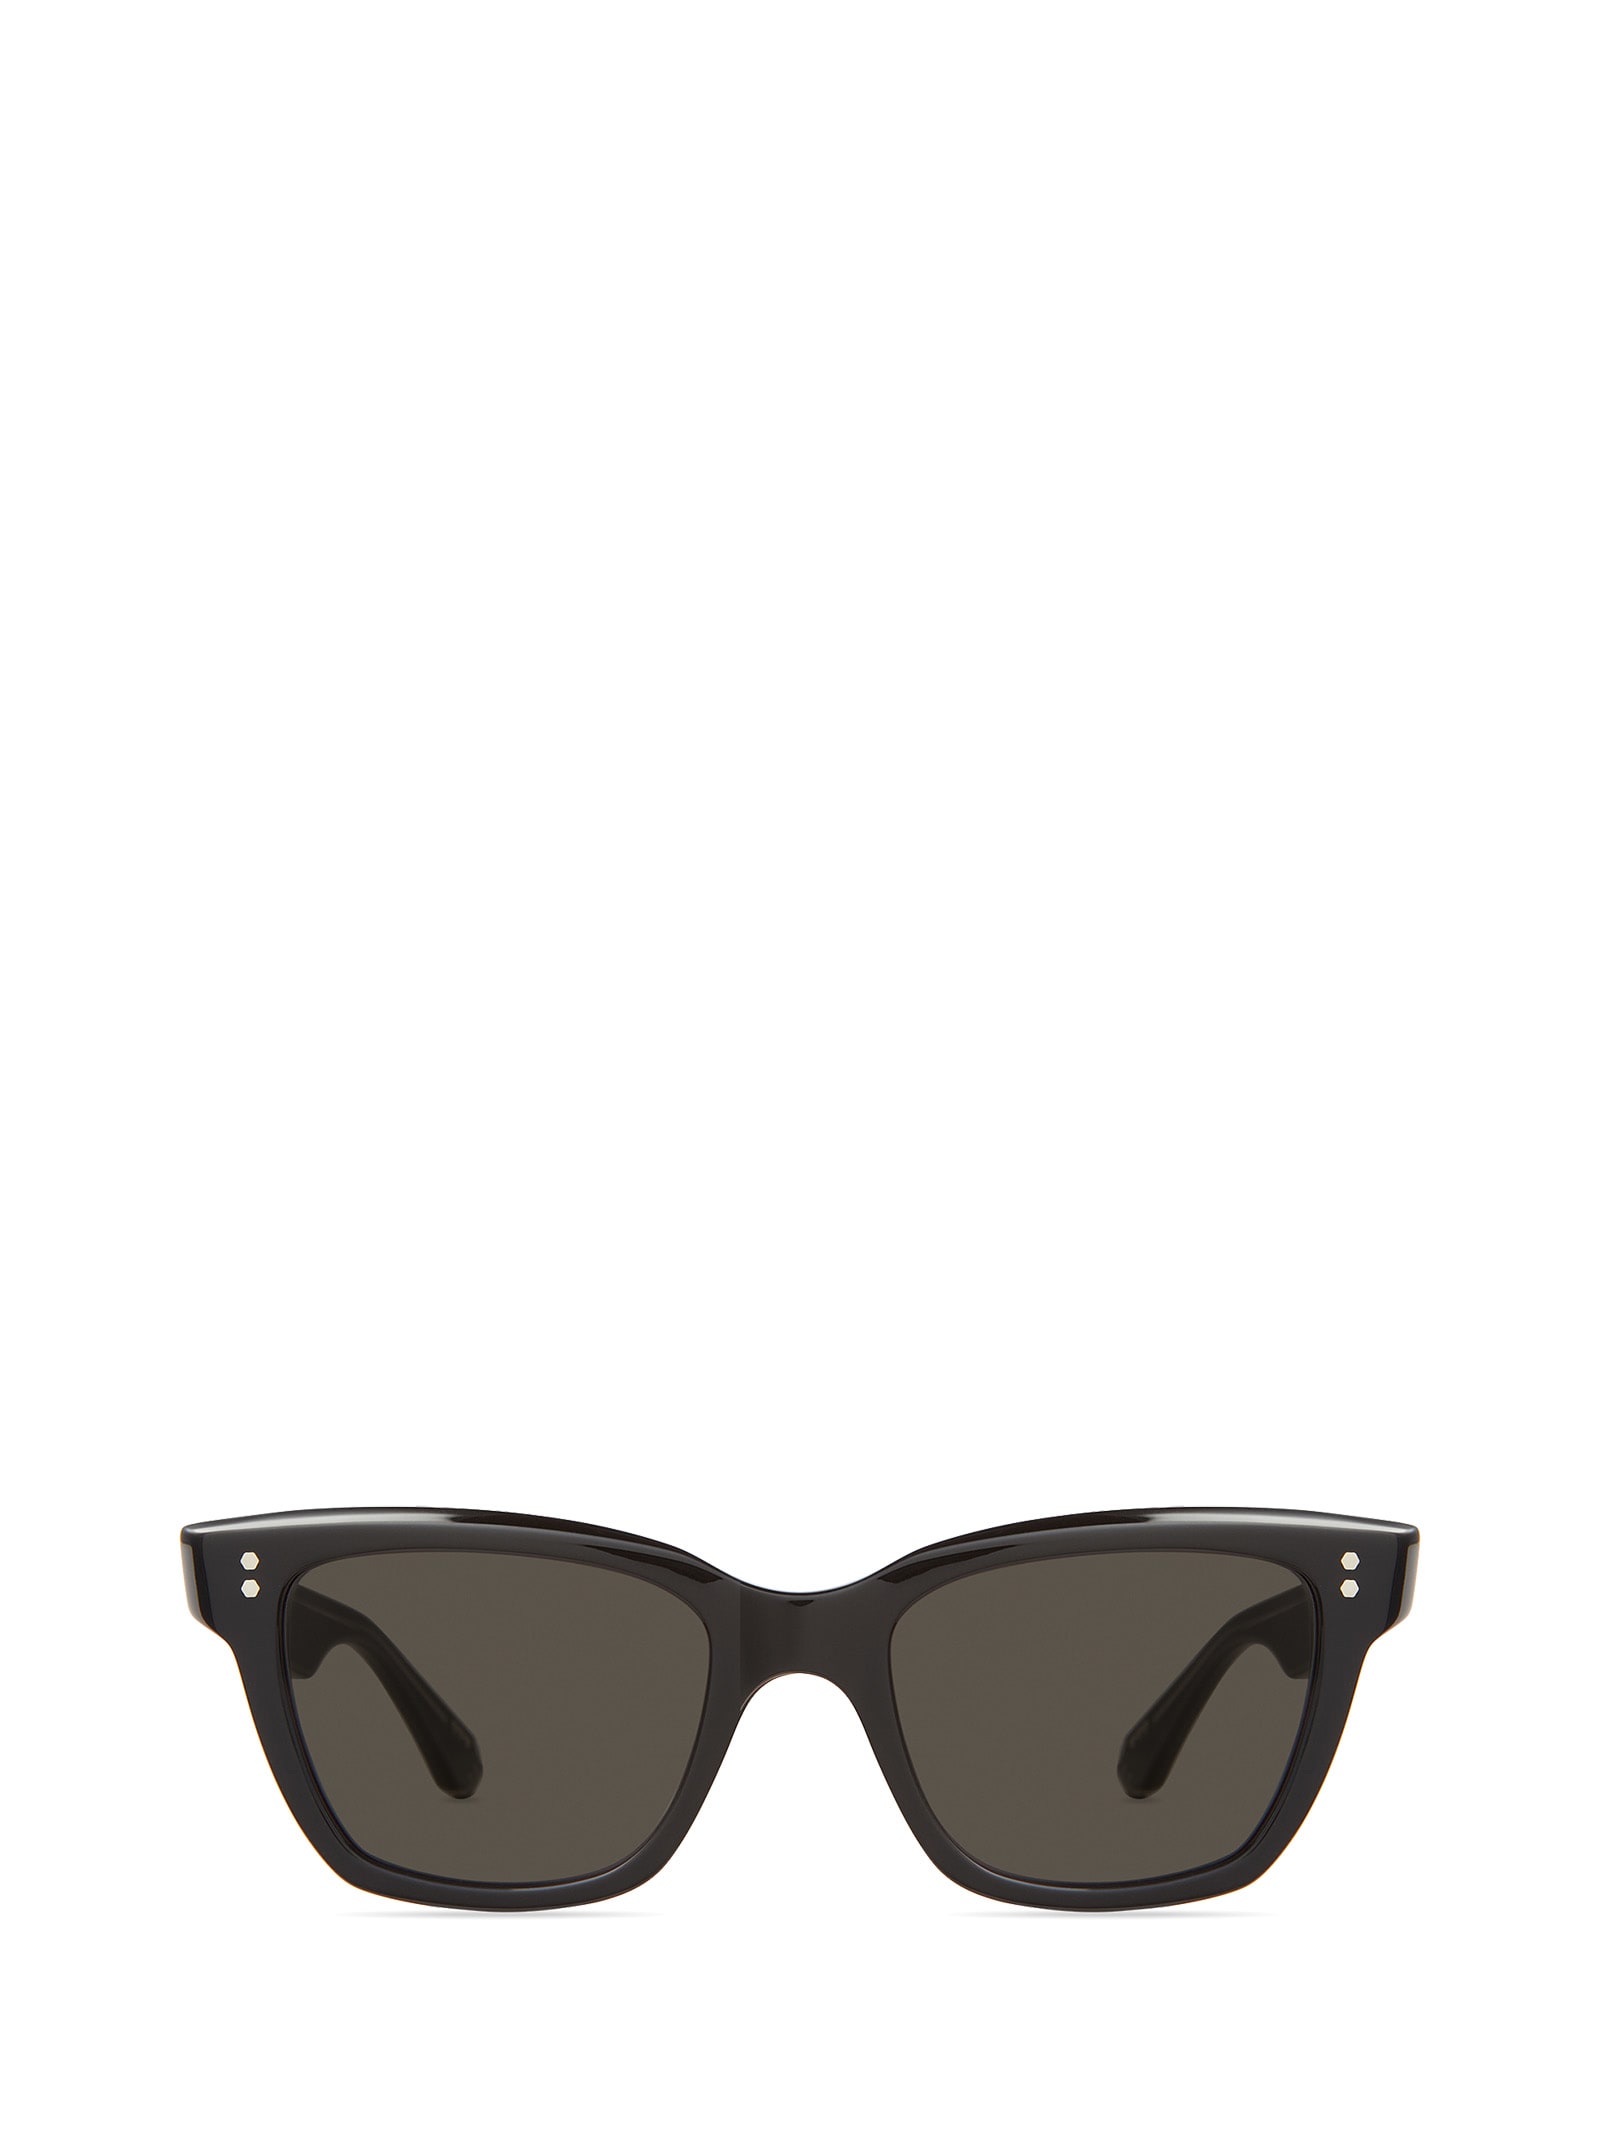 Lola S Black-platinum Sunglasses